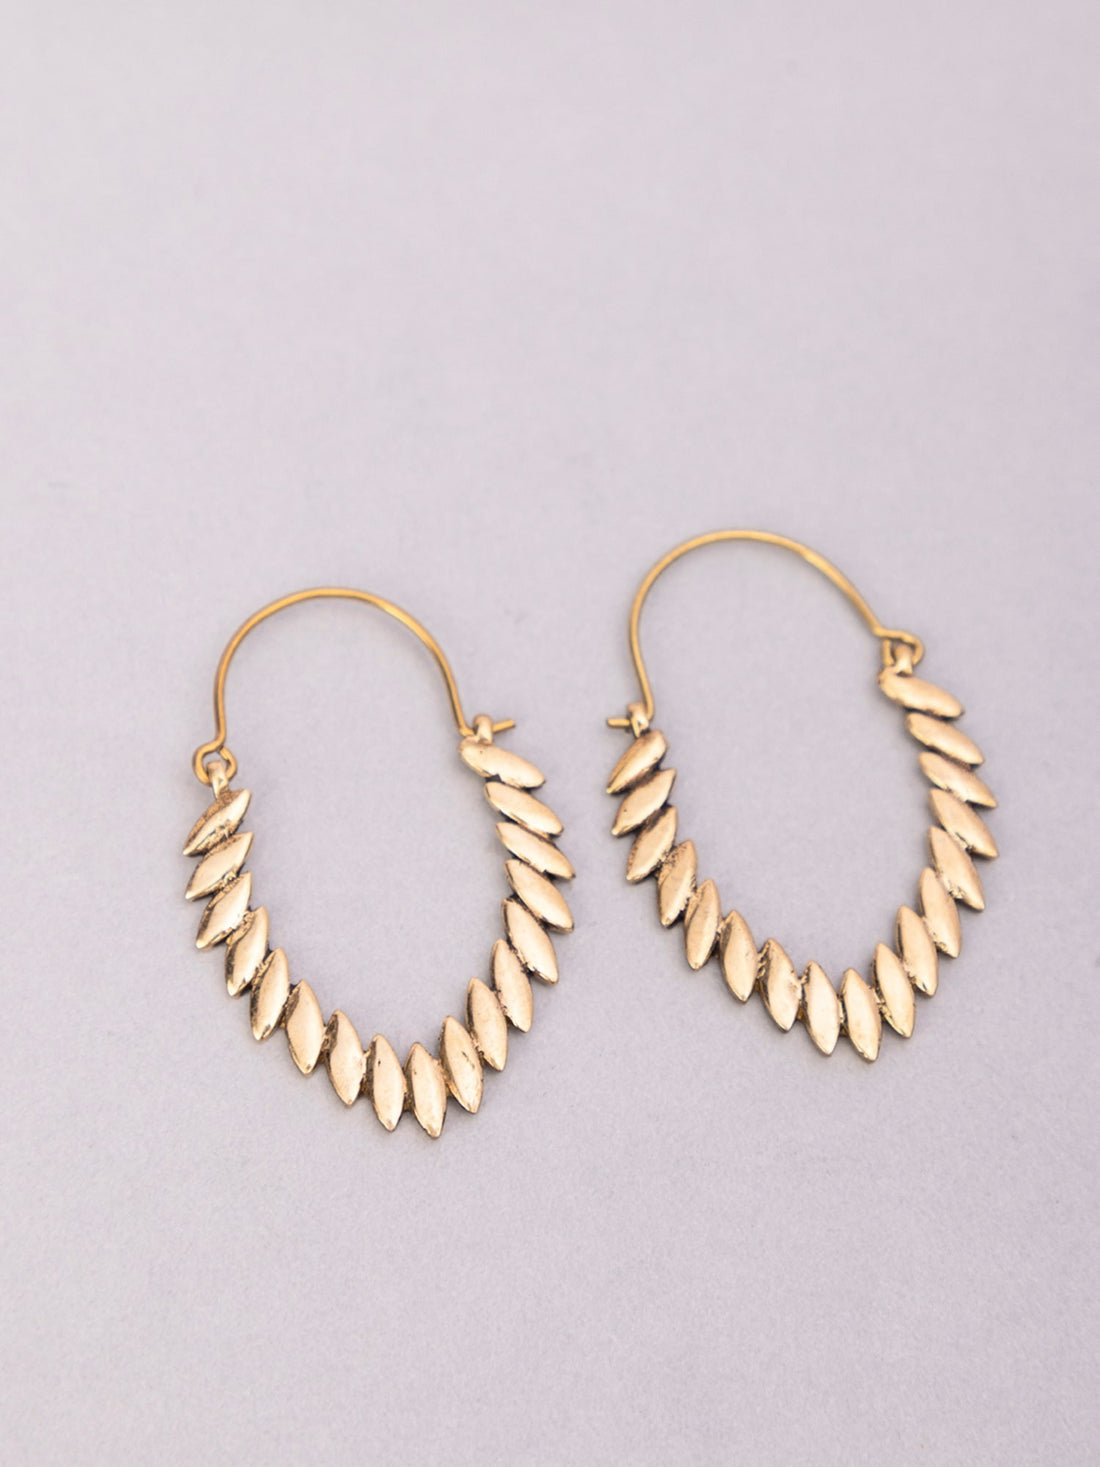 Work Wear Hoops Earrings - Western Gold-Plated Brass Earrings By Studio One Love